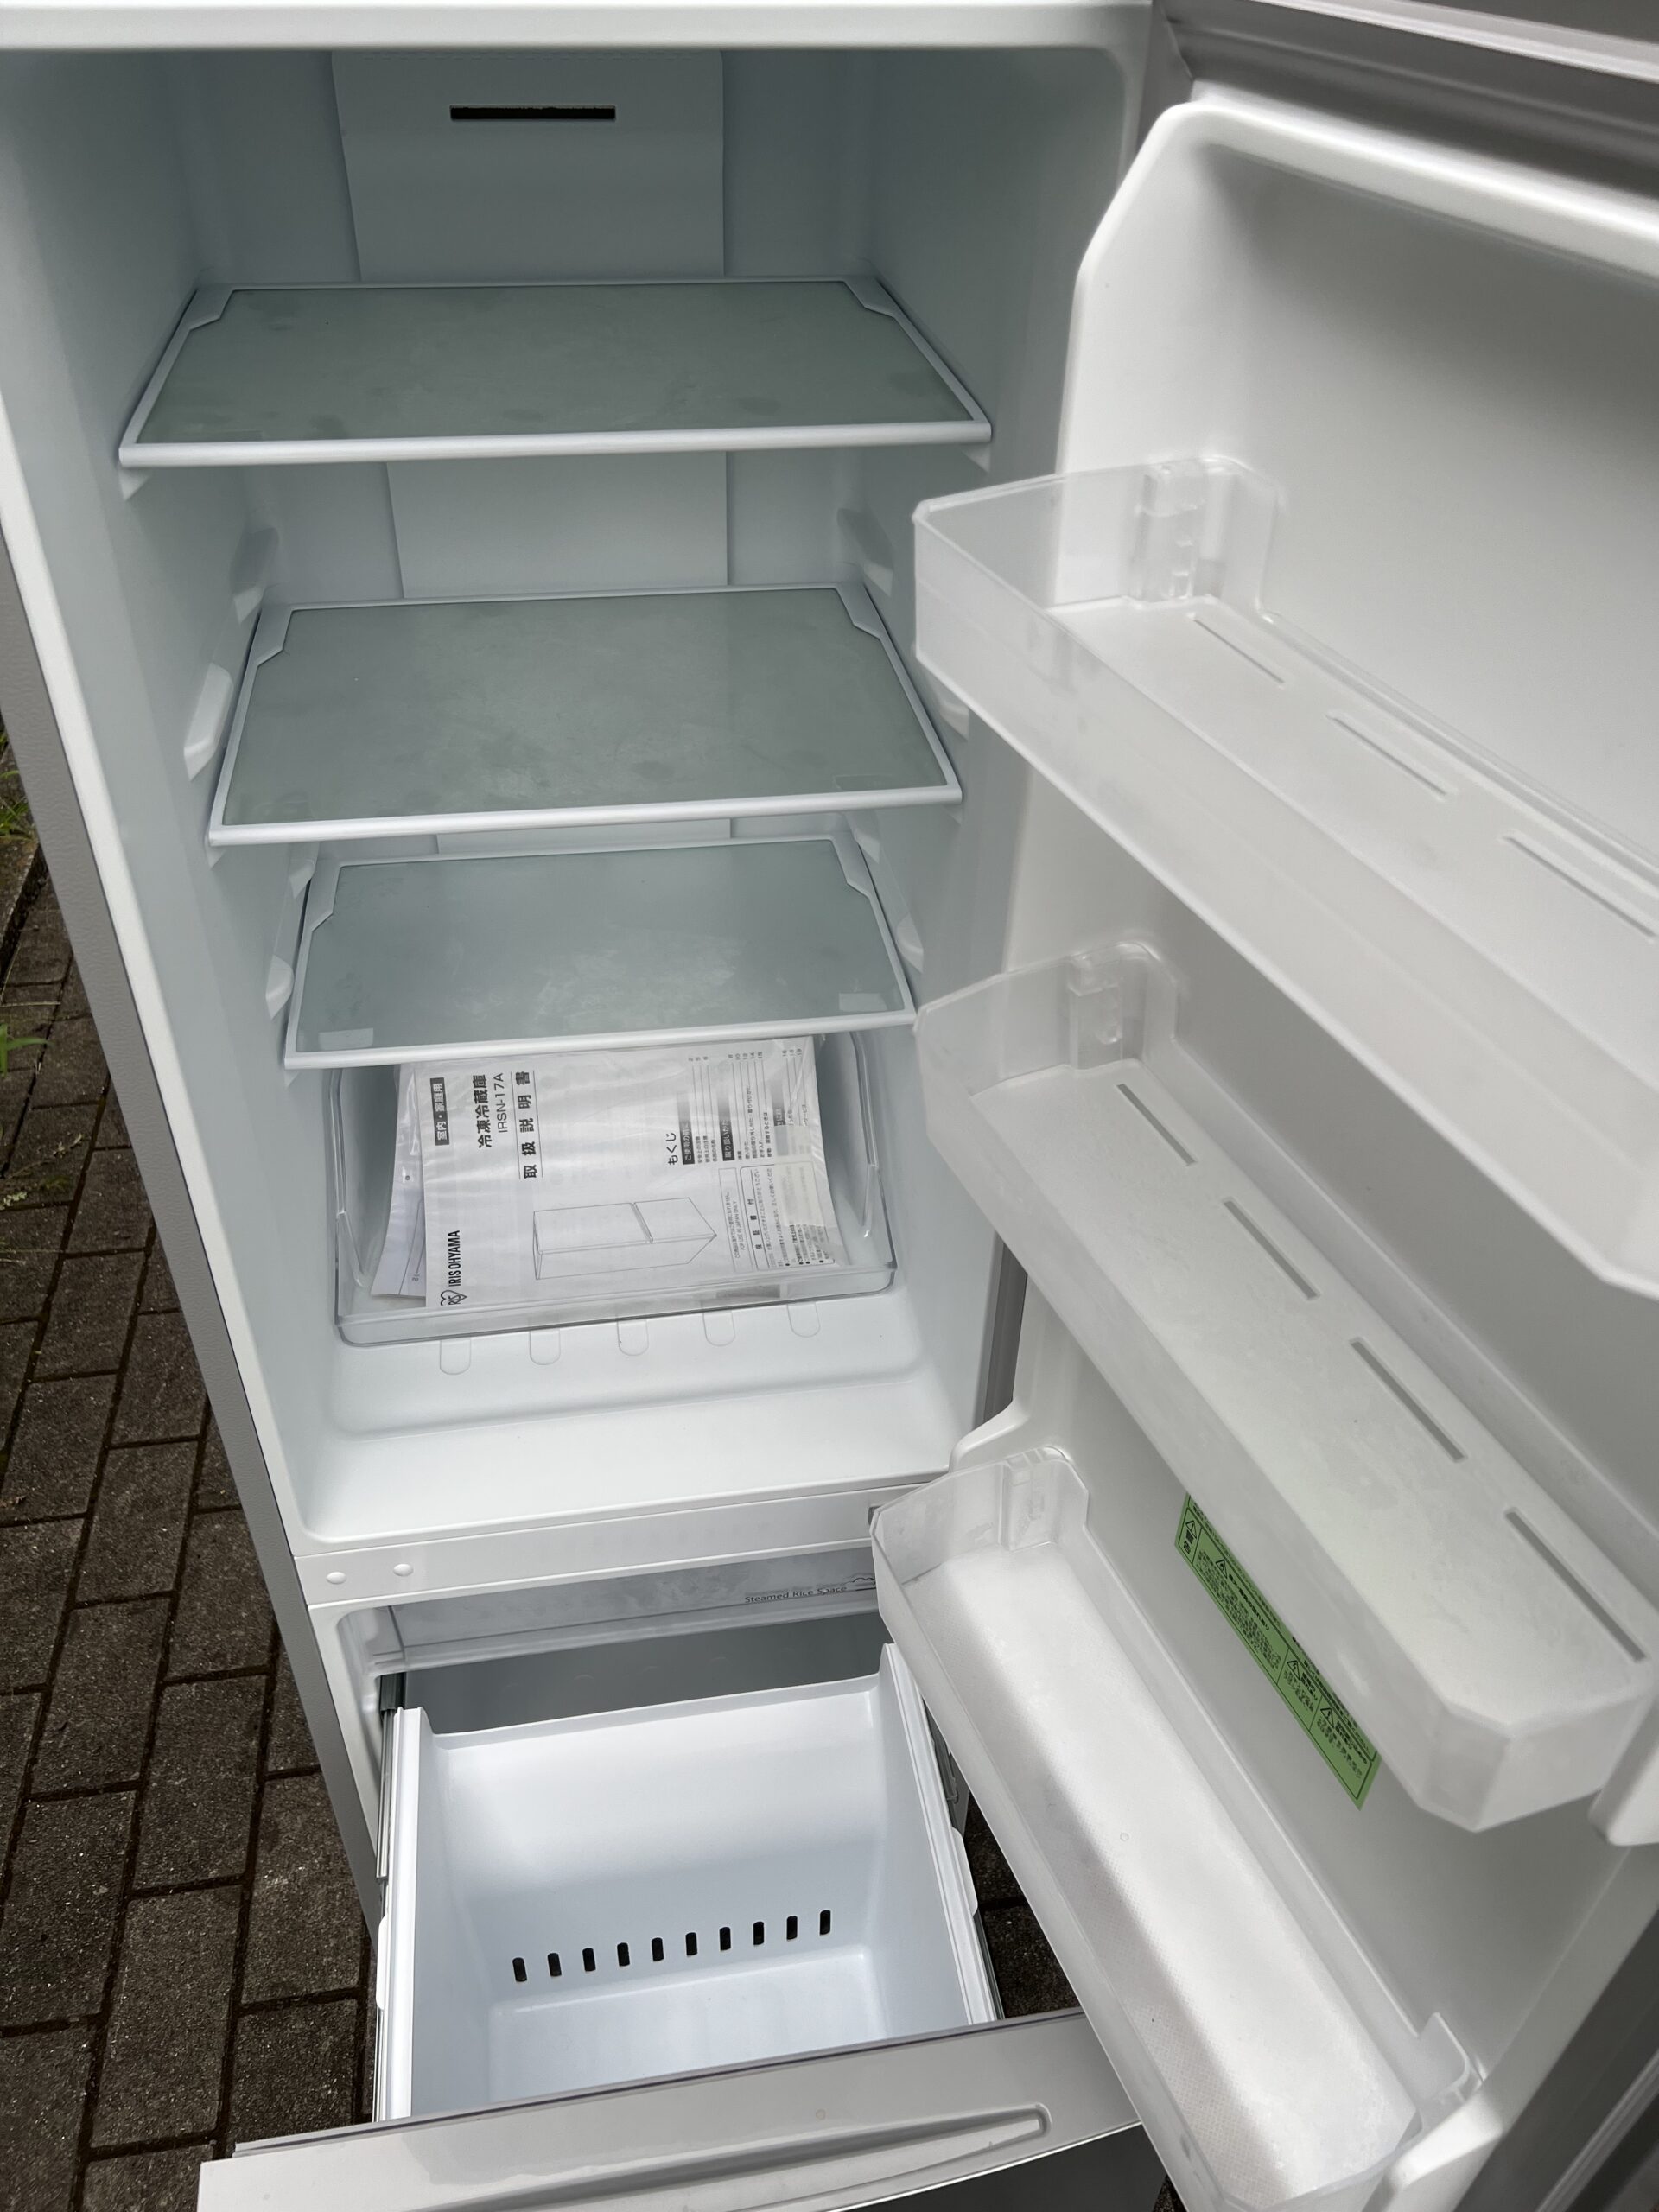 シャープ冷蔵庫、国内メーカー洗濯機　2点家電セット✨東京23区&近辺、送料無料